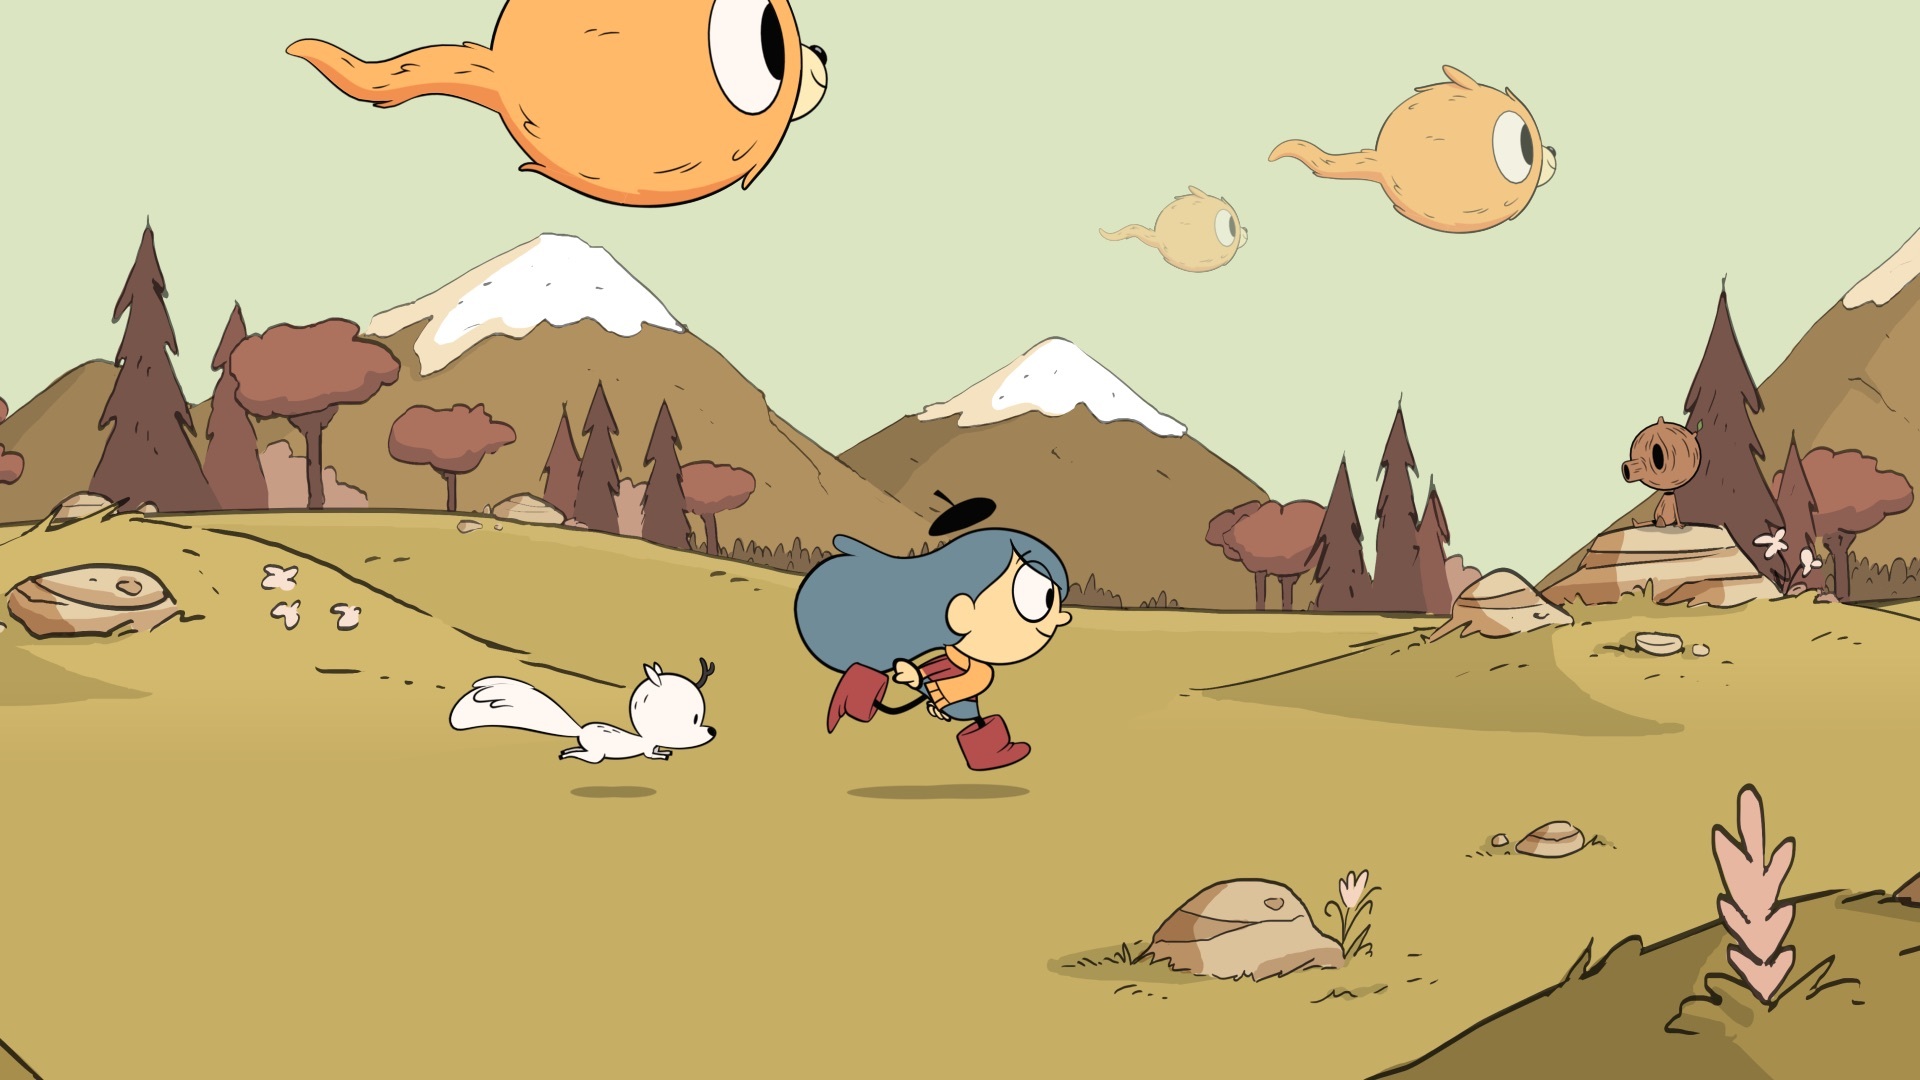 Hilda traverse un champ avec son cher animal de compagnie Twig alors que Woffs vole dans le ciel dans un épisode de Hilda